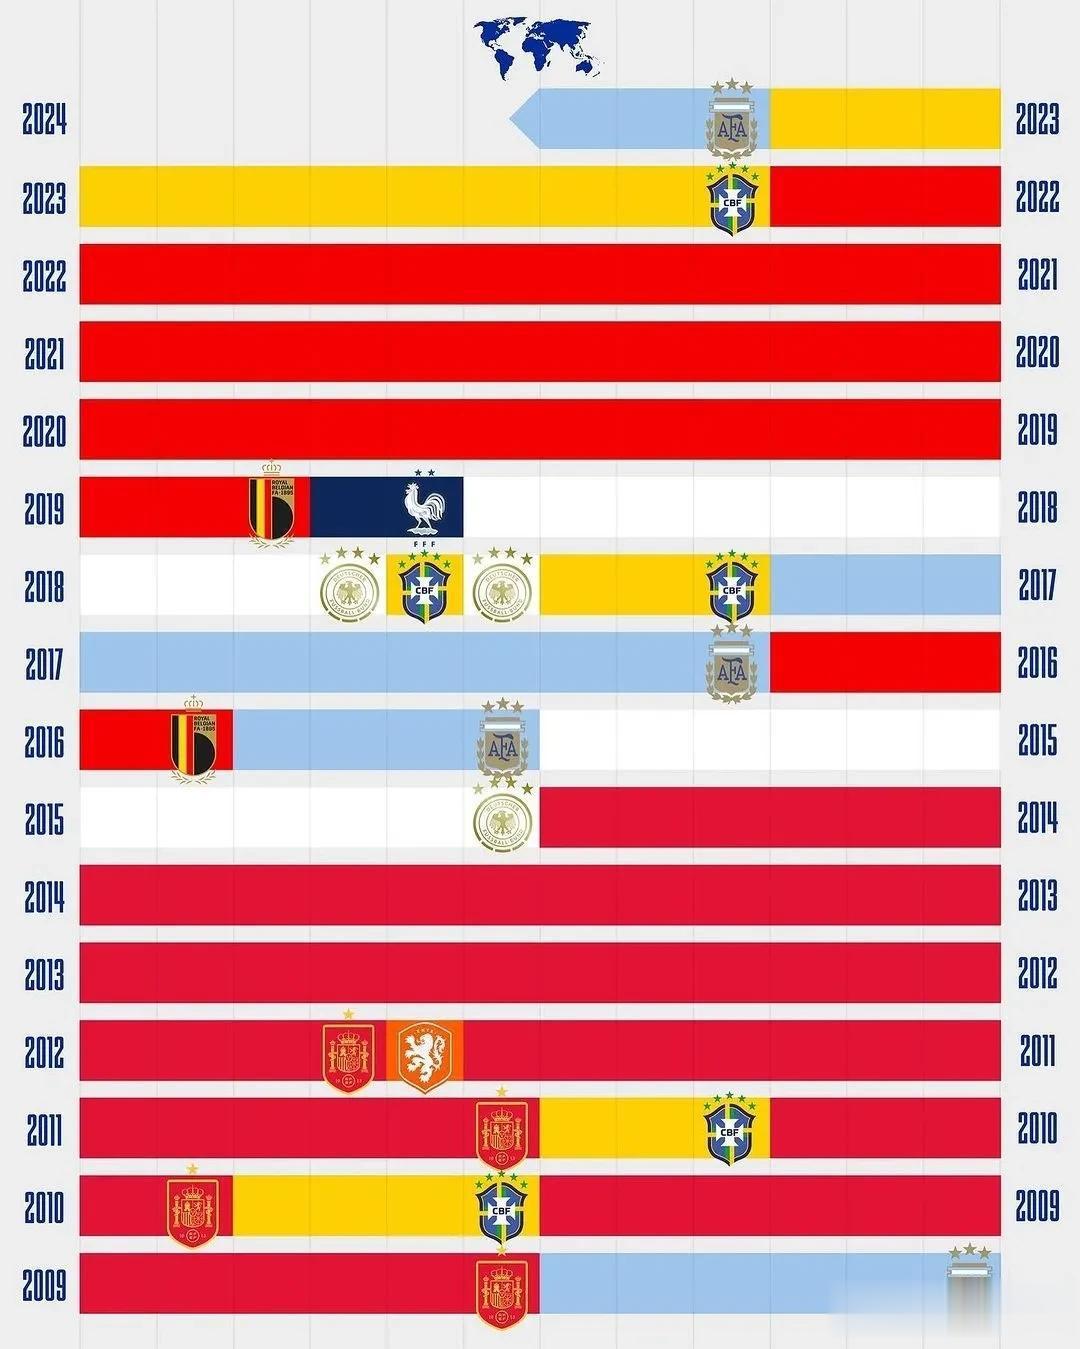 阿根廷坐稳了国际足联国家队积分榜首位置，从榜首球队演变看，西班牙国家队几乎垄断了(1)